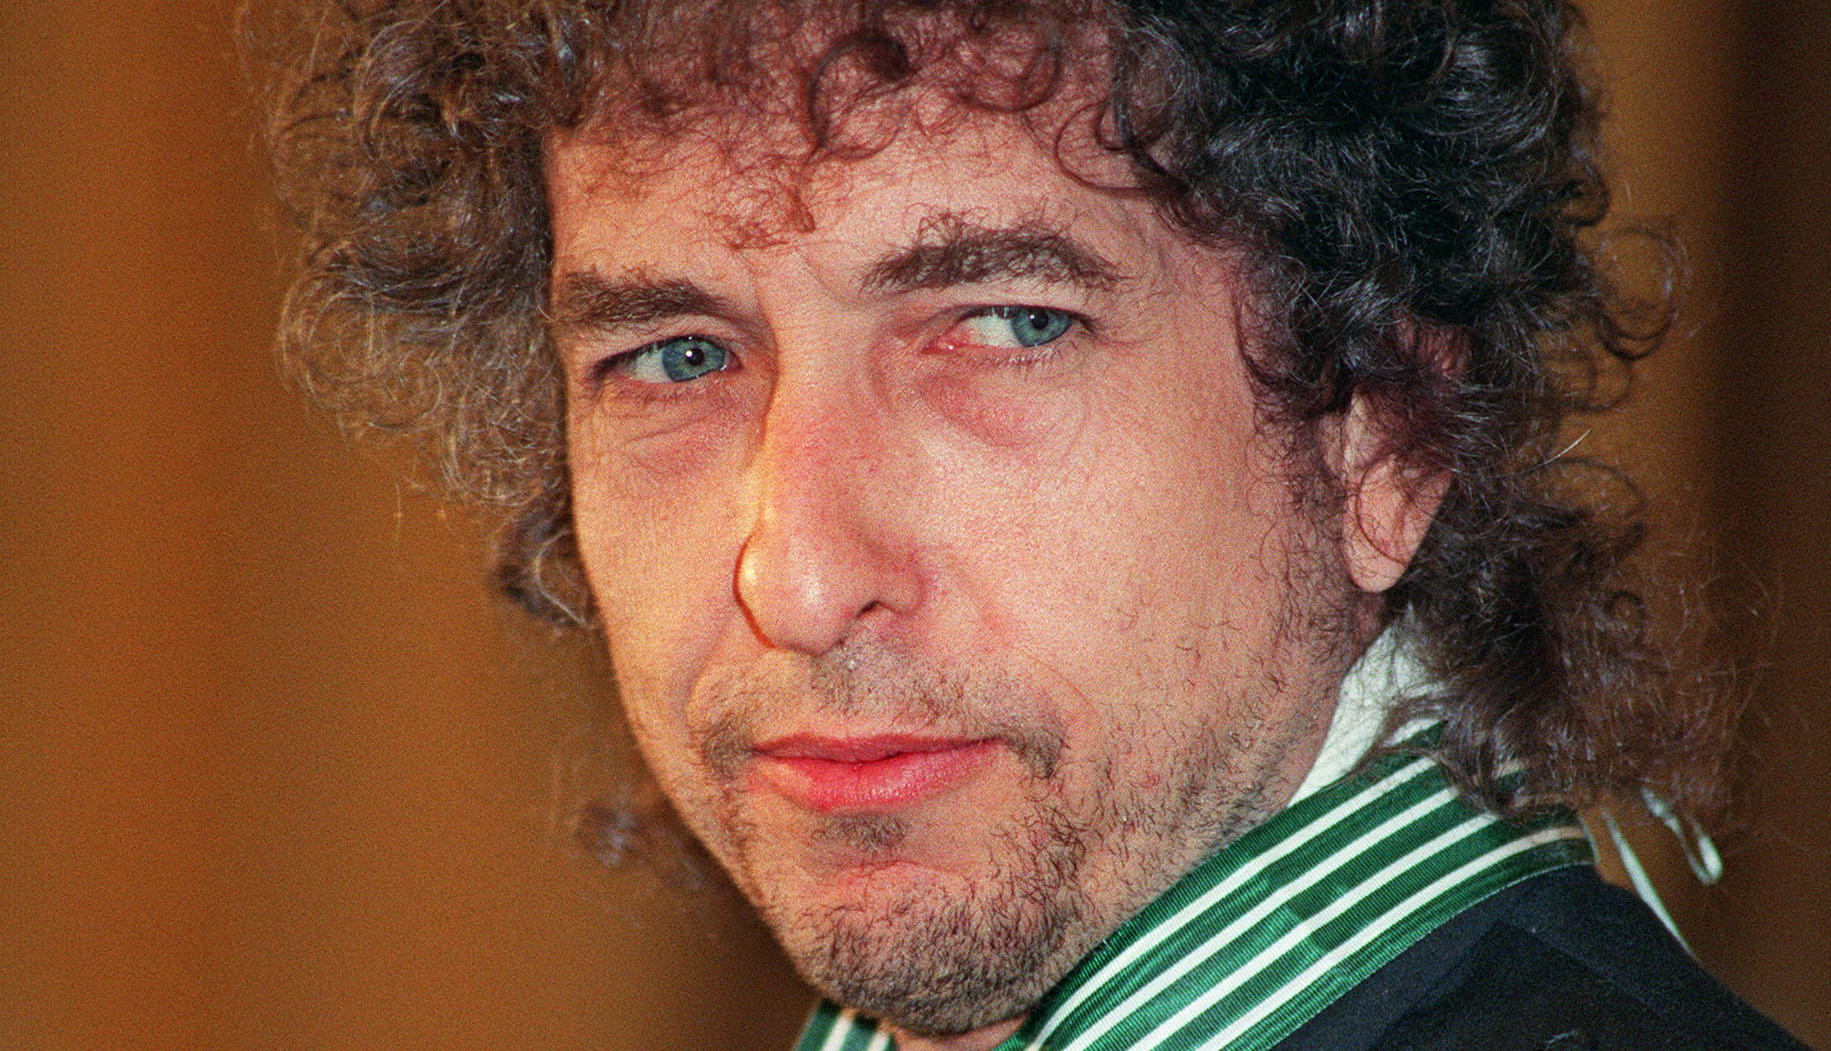 El disco es un trabajo clave para entender el resurgir de Bob Dylan como artista exitoso